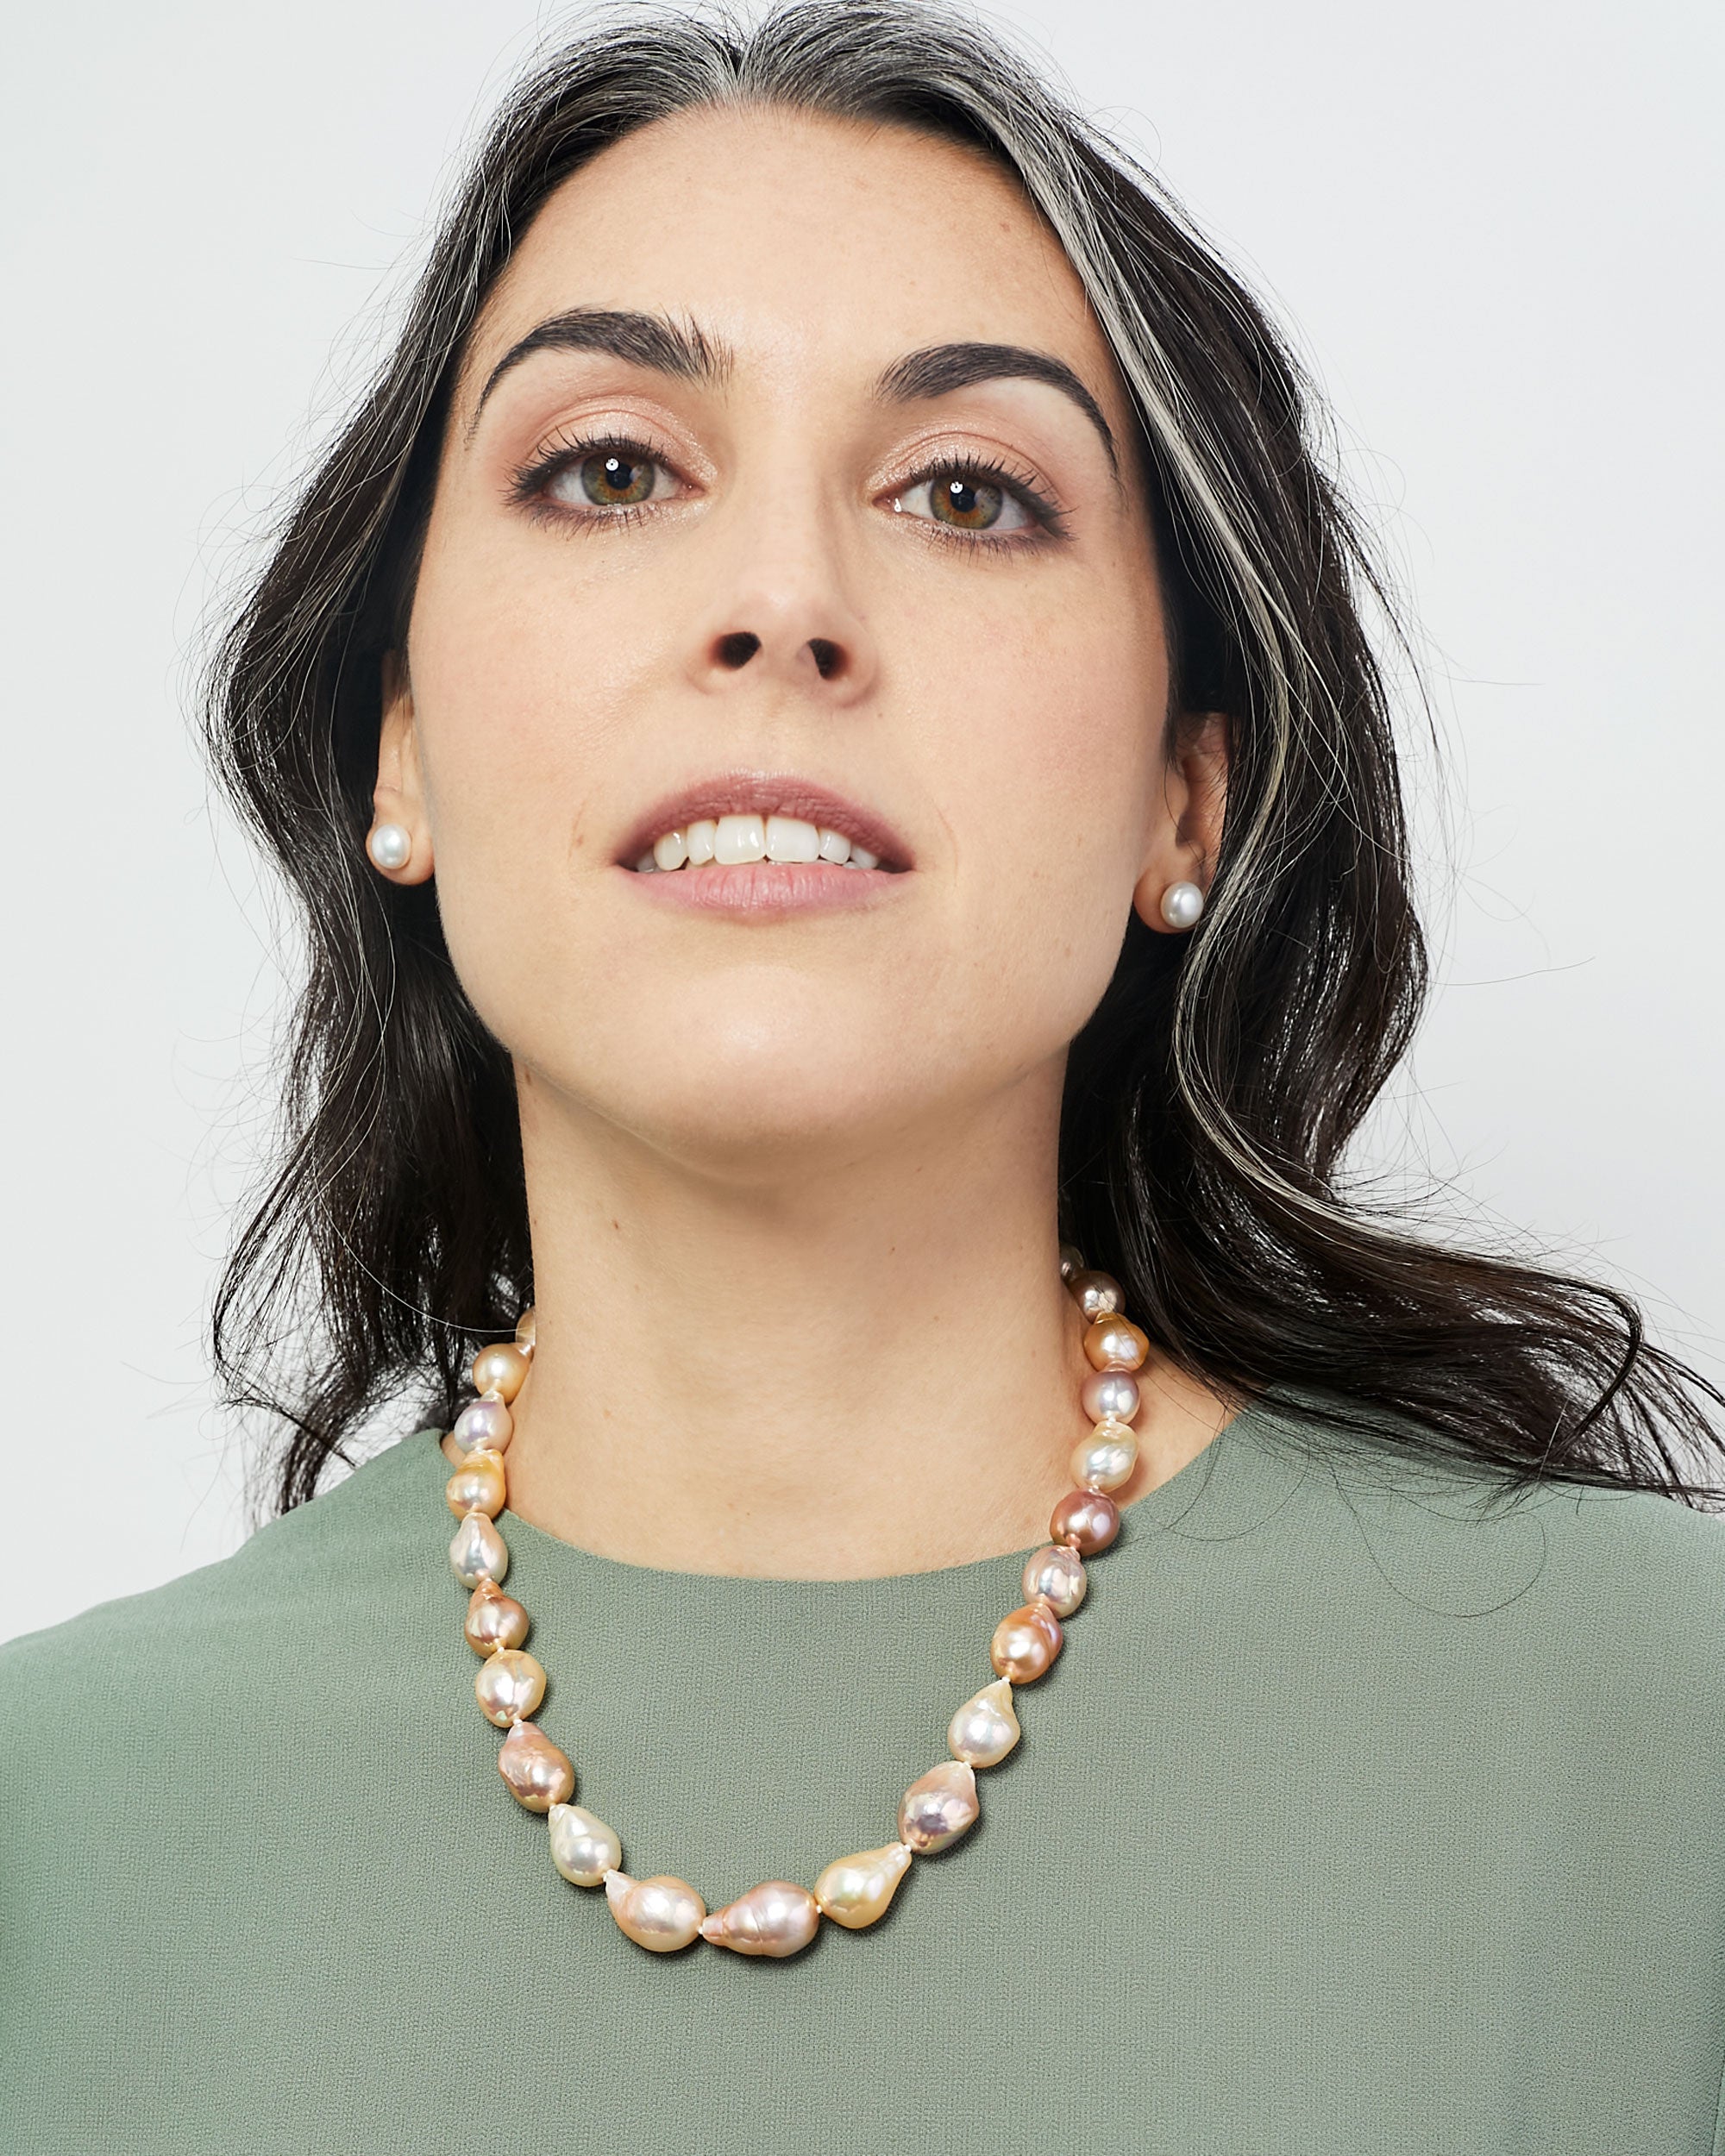 Collar de Perlas de Agua Dulce Barrocas Multicolor Natural, 11-13 mm y 45 cm largo